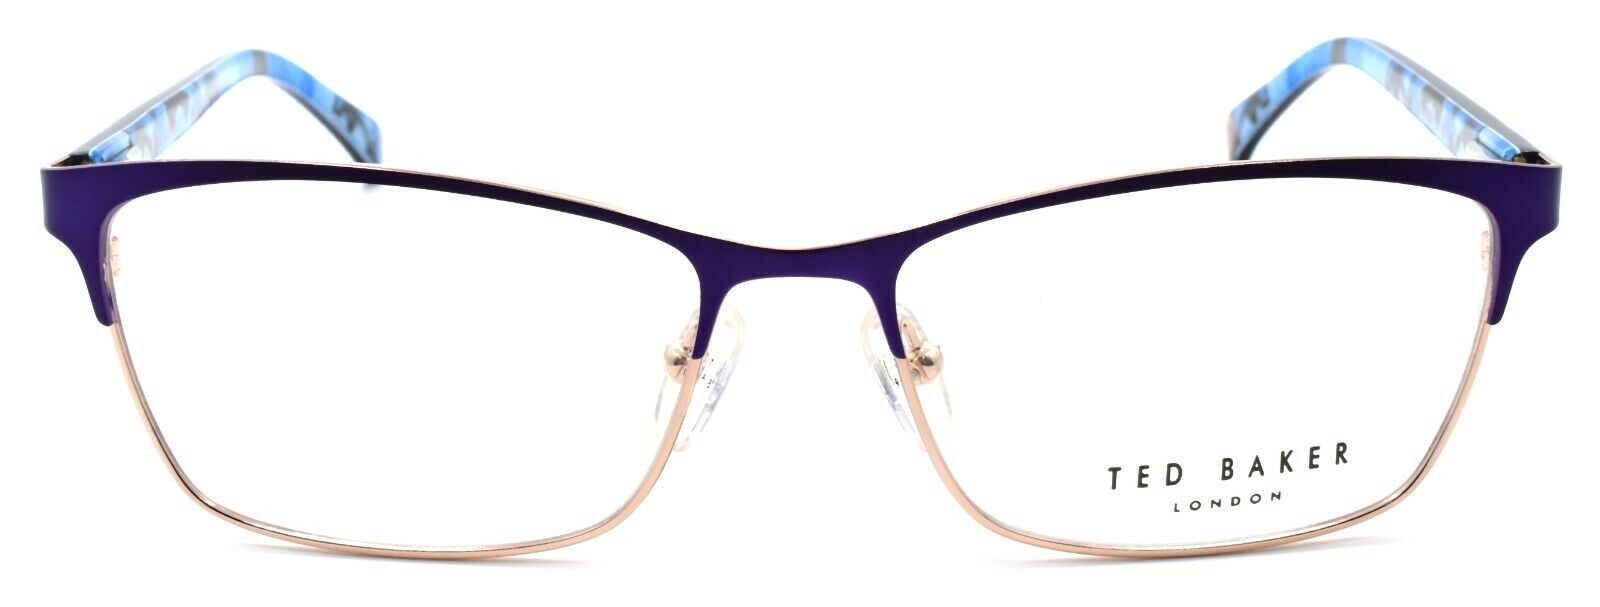 2-Ted Baker Luna 2231 665 Women's Eyeglasses Frames 53-15-135 Navy Blue / Gold-4894327181247-IKSpecs